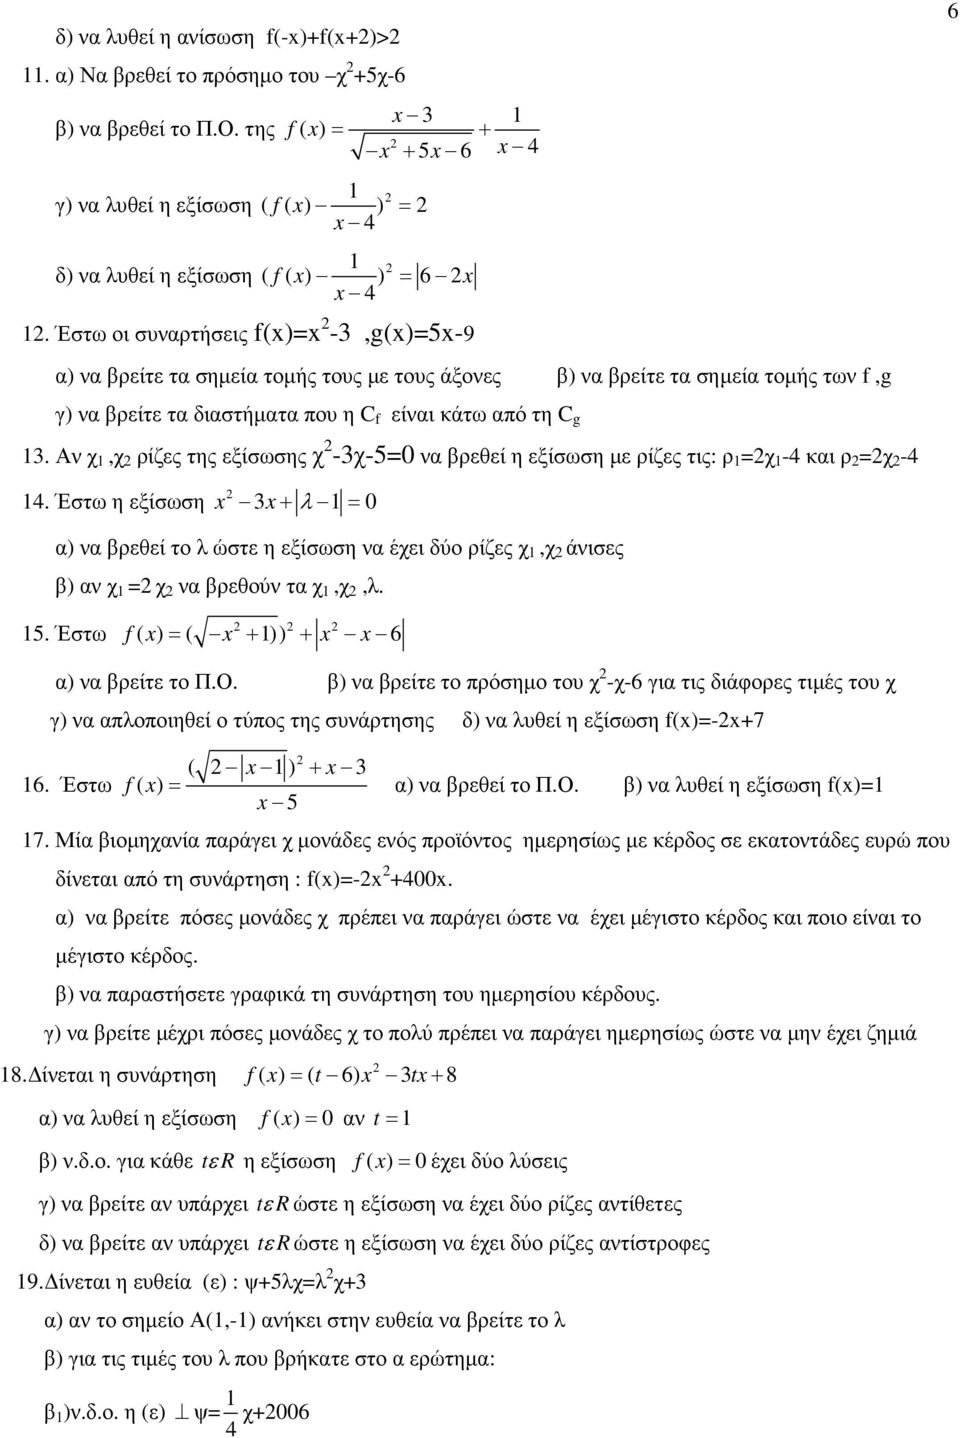 Αν χ 1,χ ρίζες της εξίσωσης χ -3χ-50 να βρεθεί η εξίσωση µε ρίζες τις: ρ 1 χ 1-4 και ρ χ -4 14.